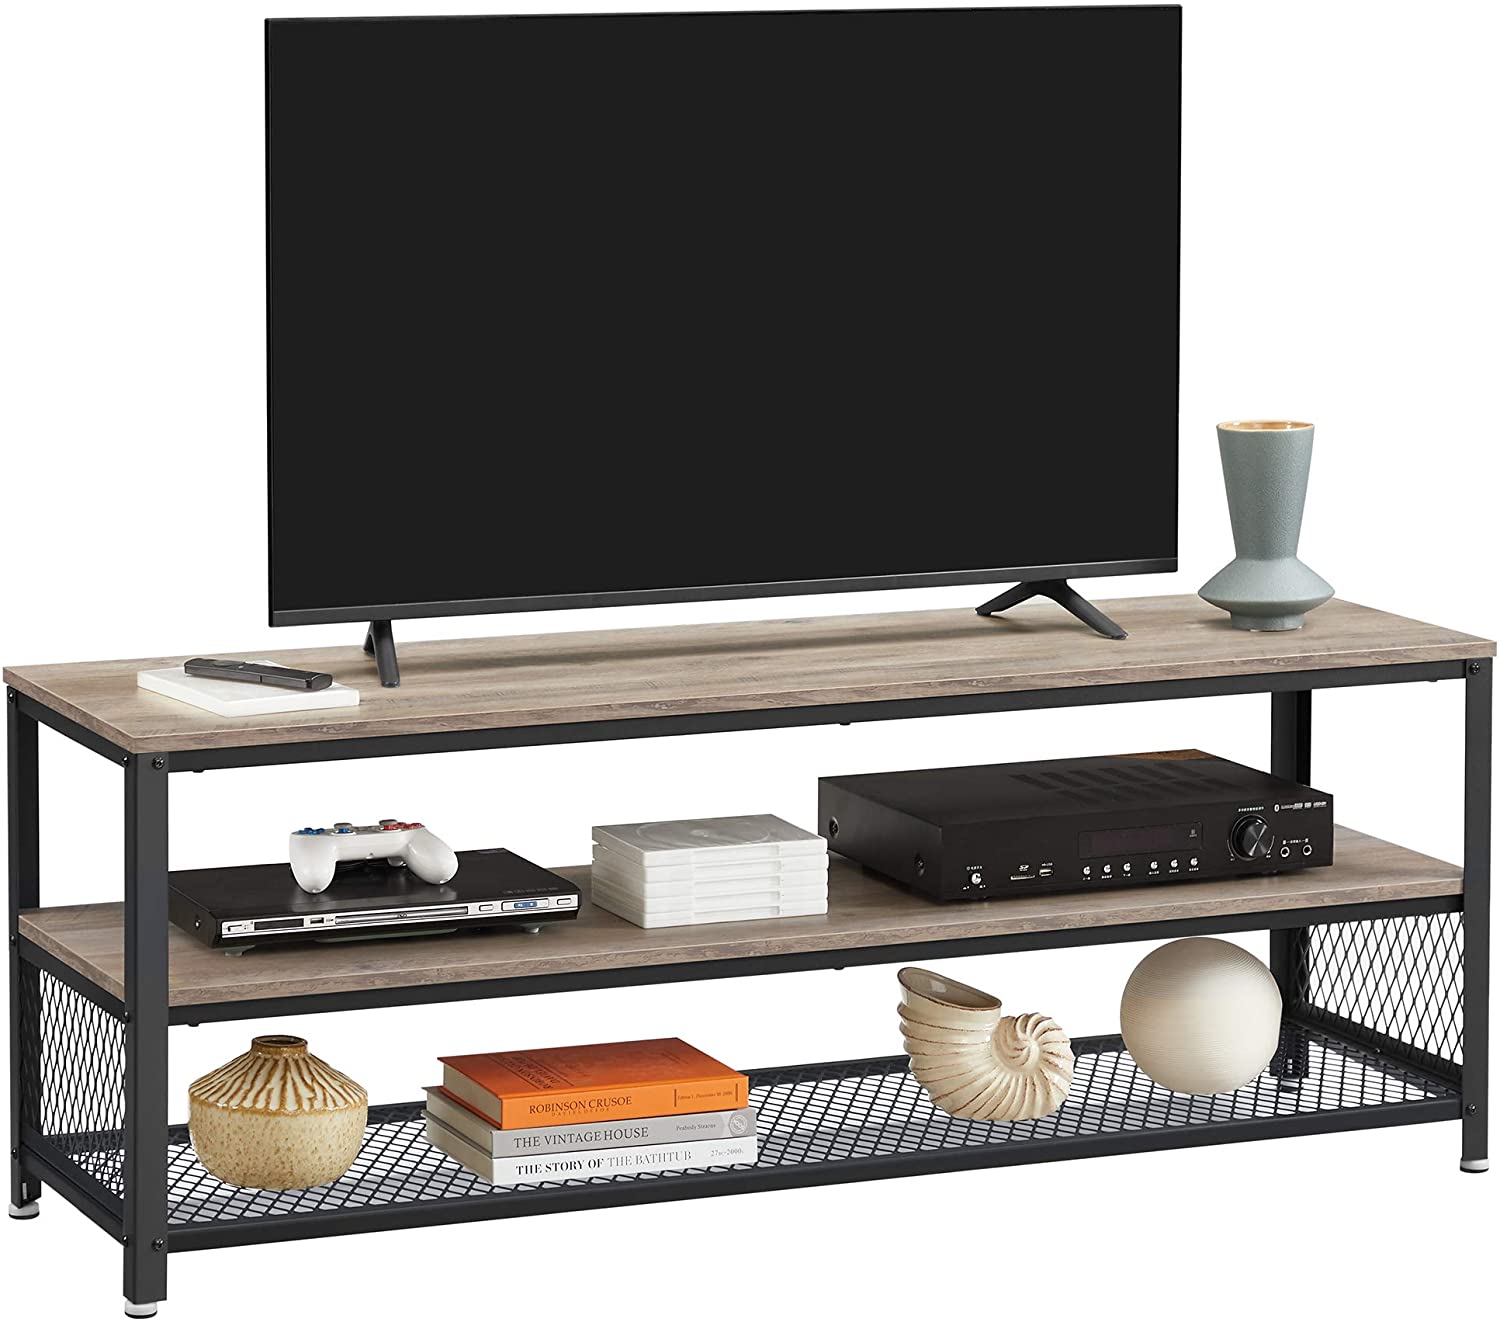 Klassische rustikale Möbel, Holz- und Metallrahmen-TV-Tisch für bis zu 65-Zoll-Fernseher mit dreischichtiger Aufbewahrung für das Wohnzimmer